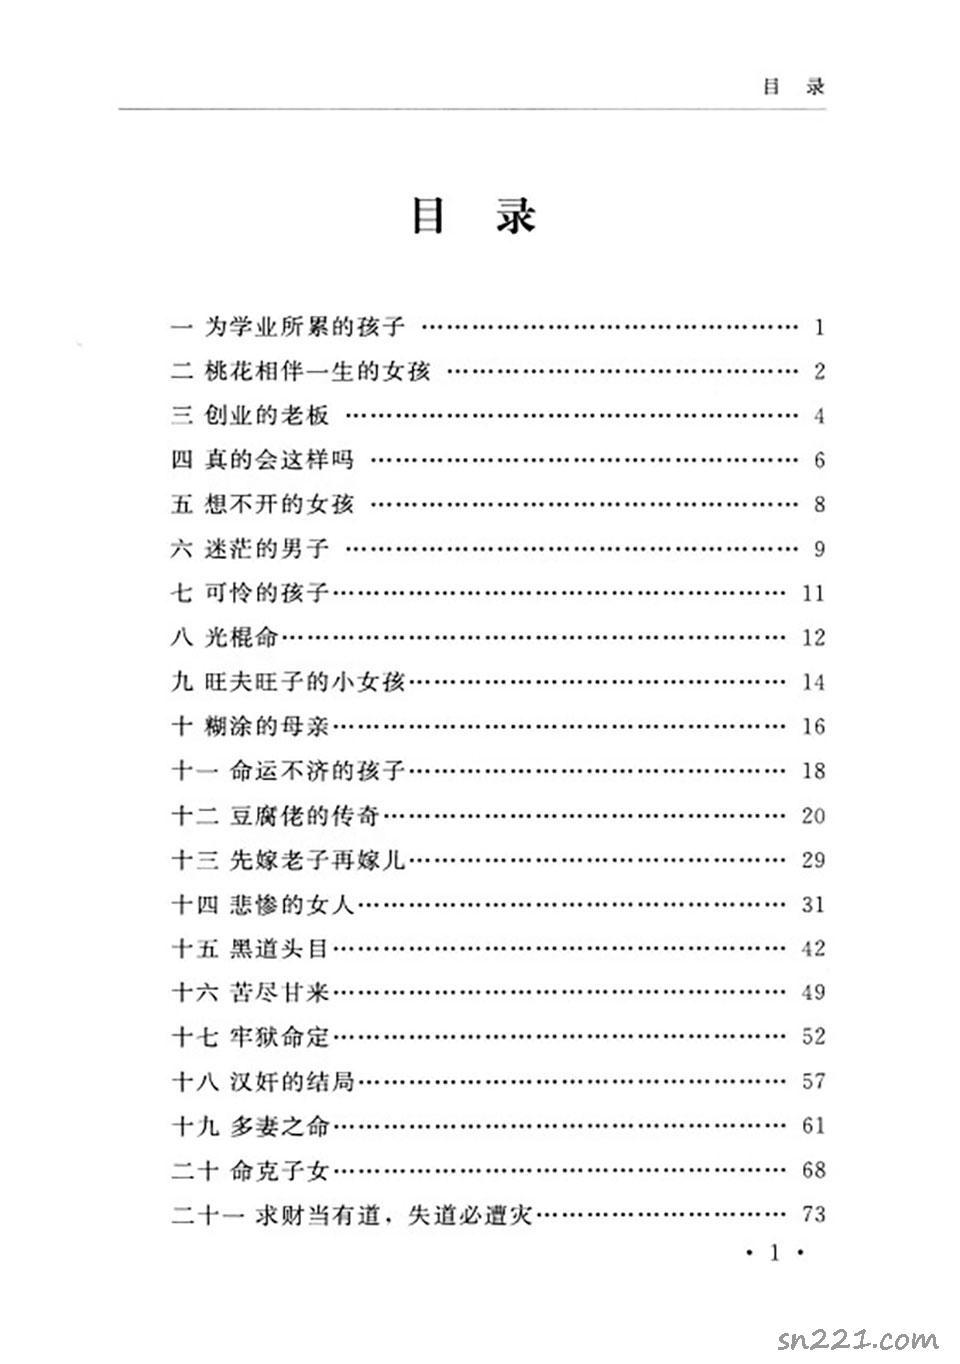 鄭民生弟子胡大軍《盲師斷命秘錄》155頁.pdf